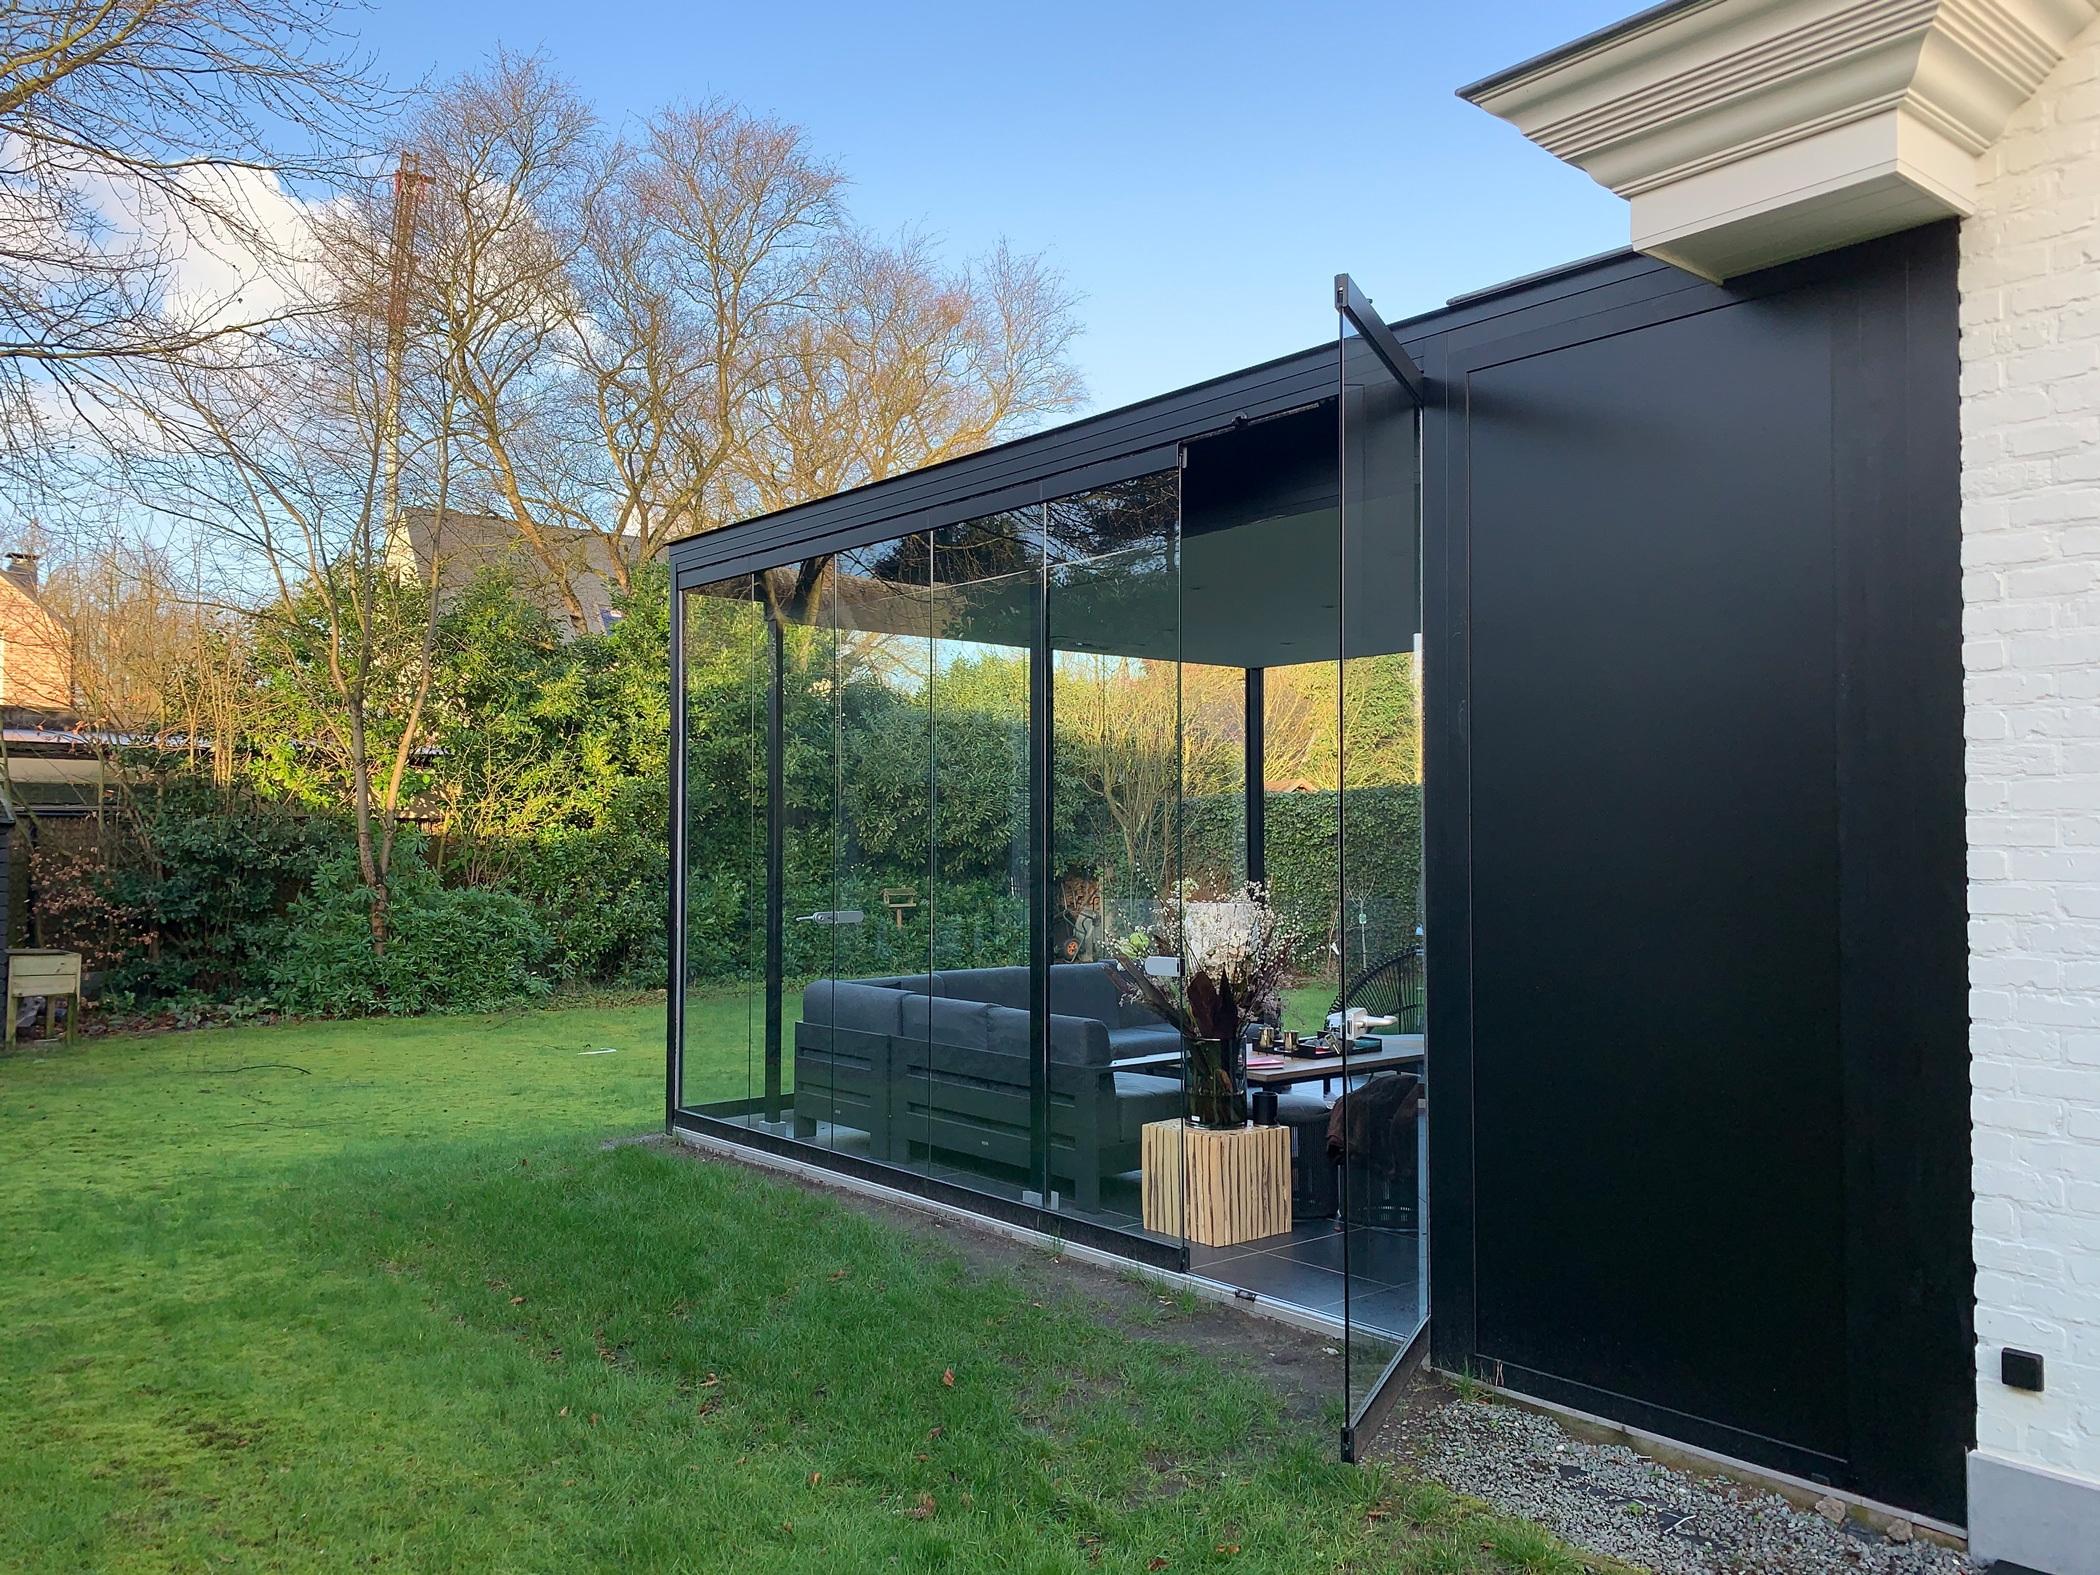 Terrasse zu Wintergarten umbauen mit Glas Schiebe-Dreh-Systemen